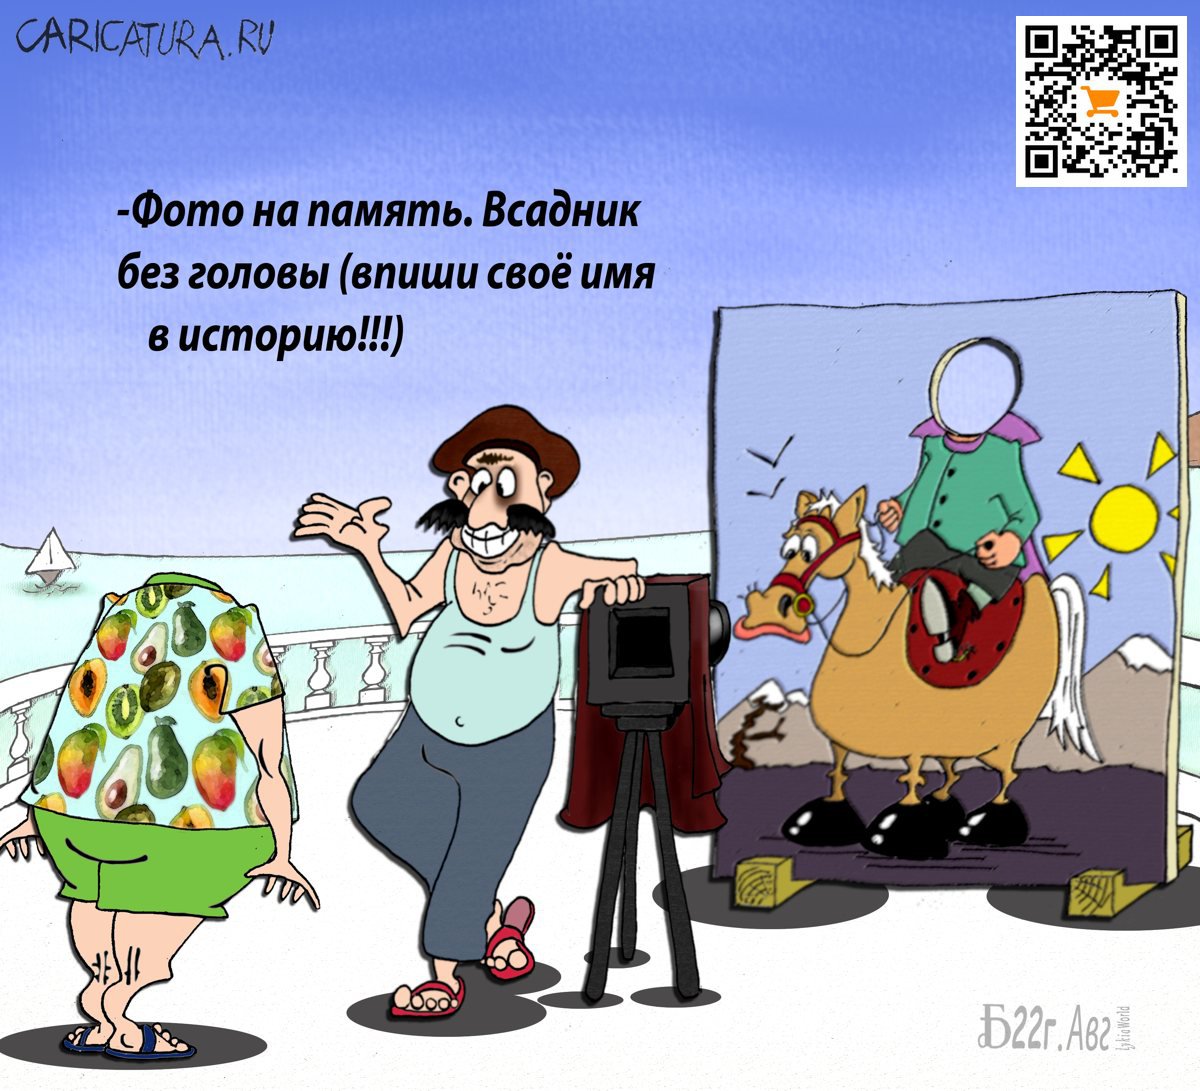 Карикатура "Про вместо истории", Борис Демин